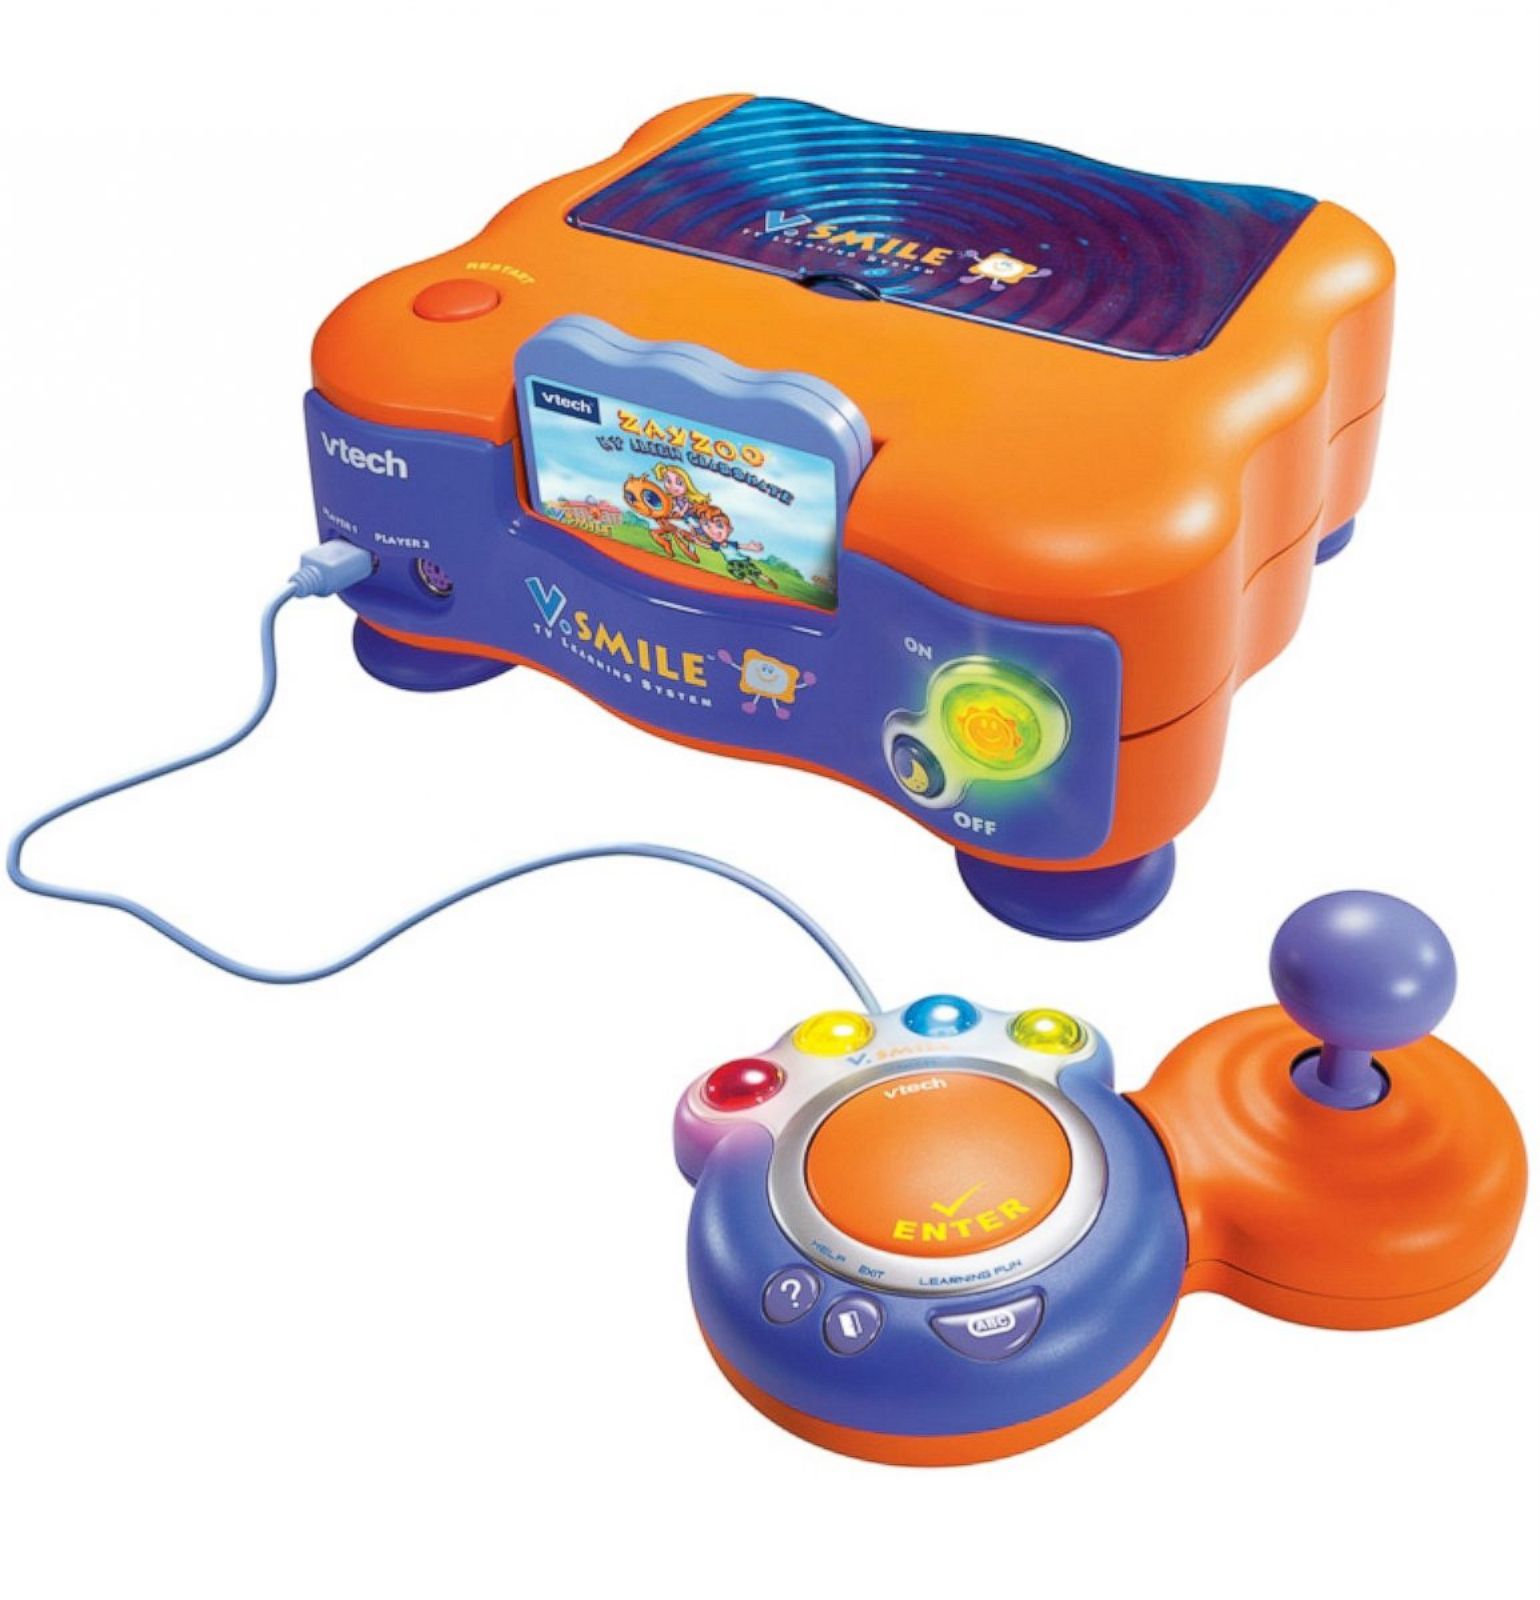 early 2000s toys nostalgia